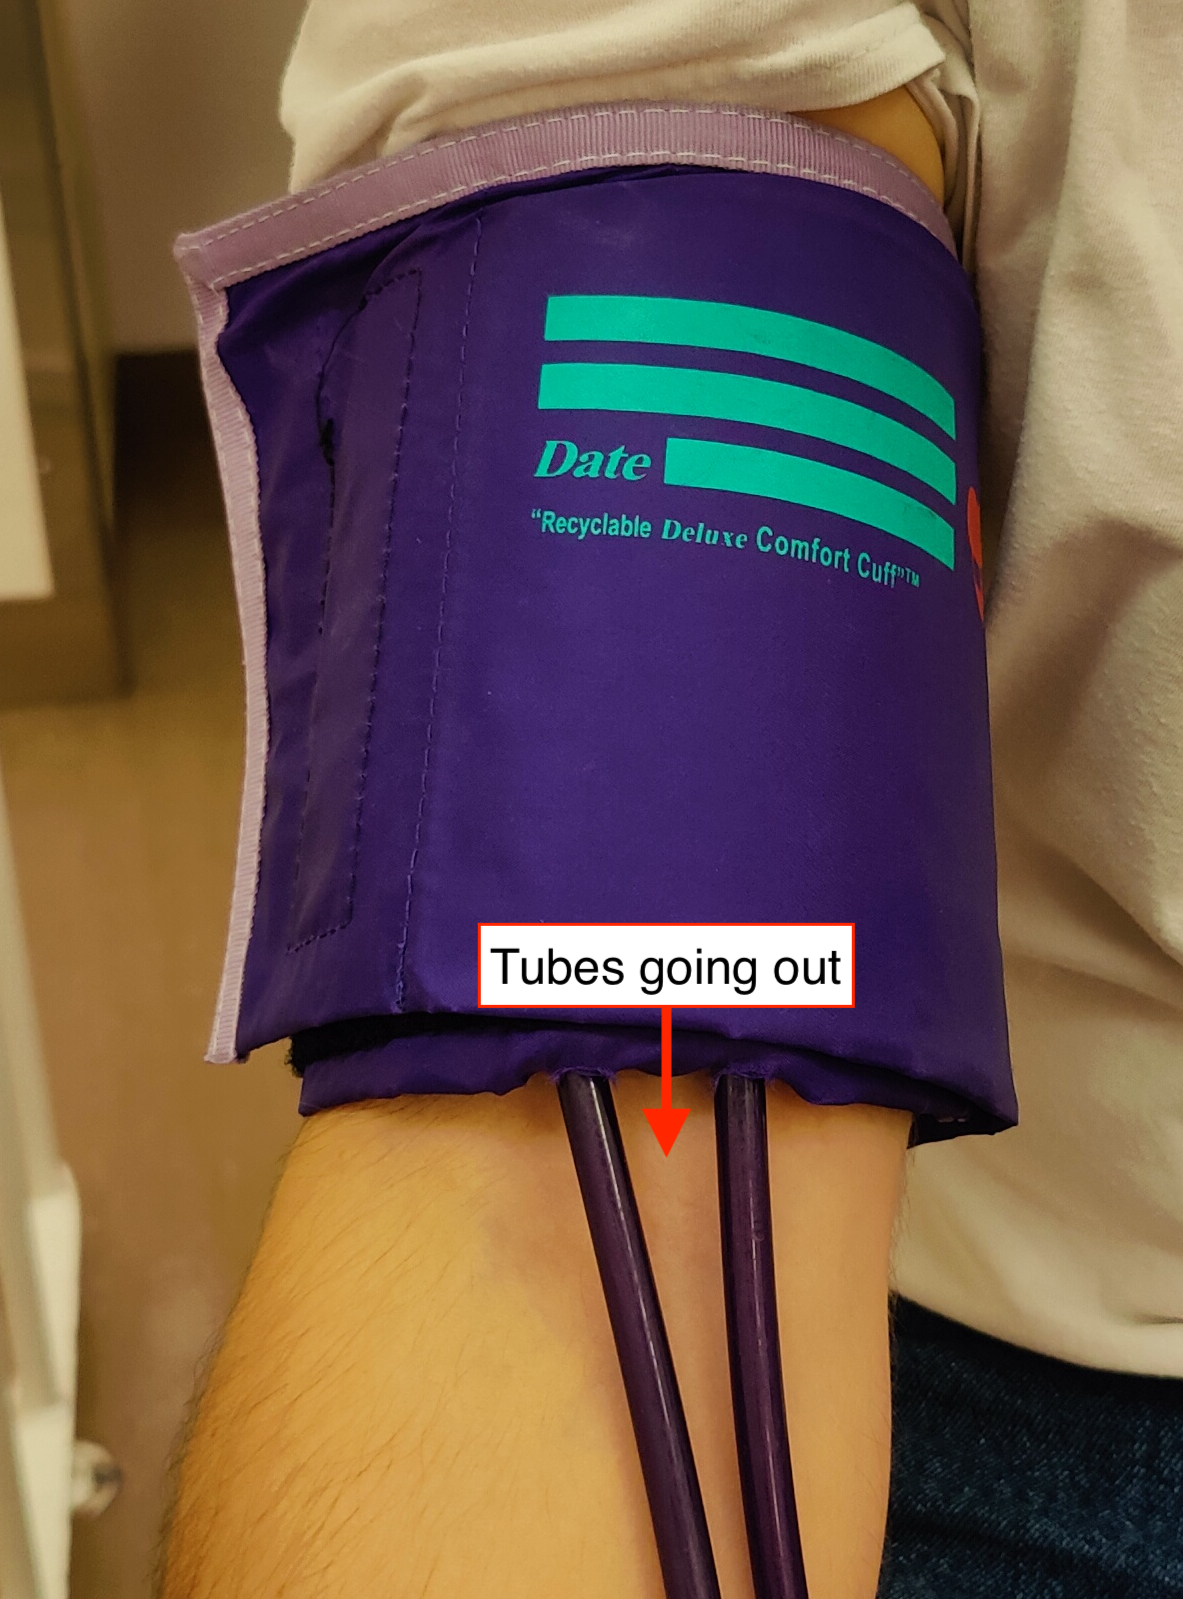 Blood pressure arm band